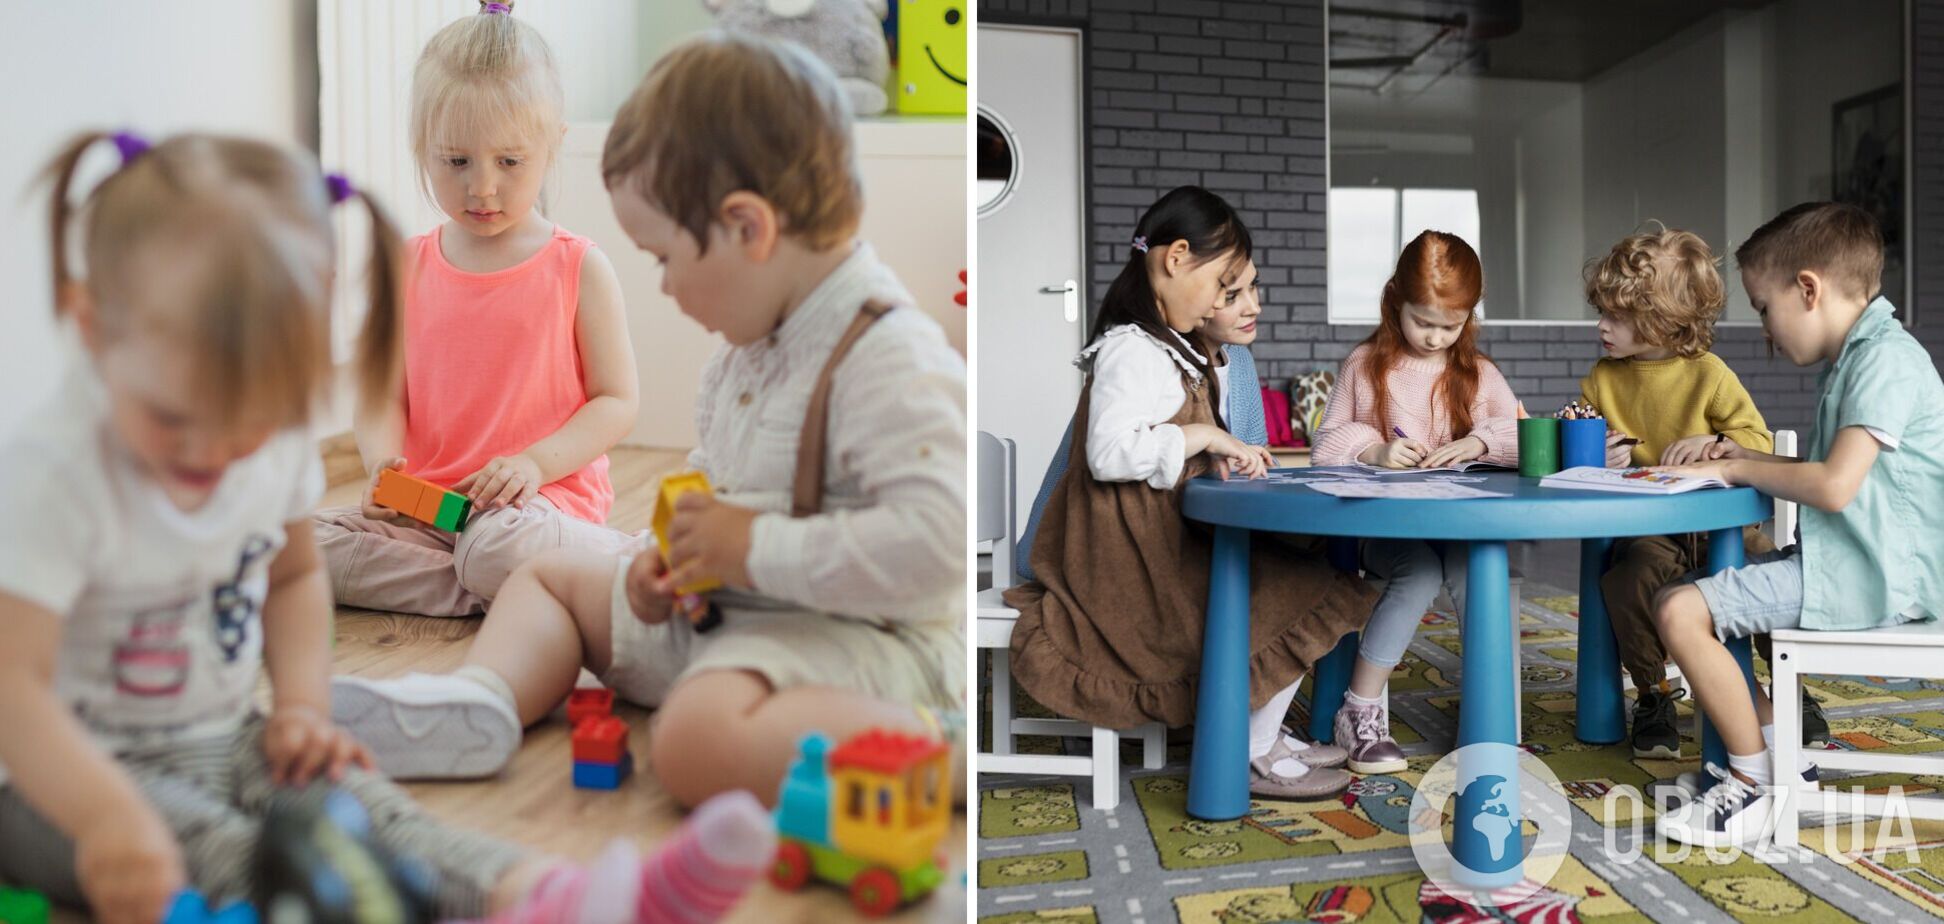 В Украине хотят открыть детские сады при офисах: первое заведение появится в МОН